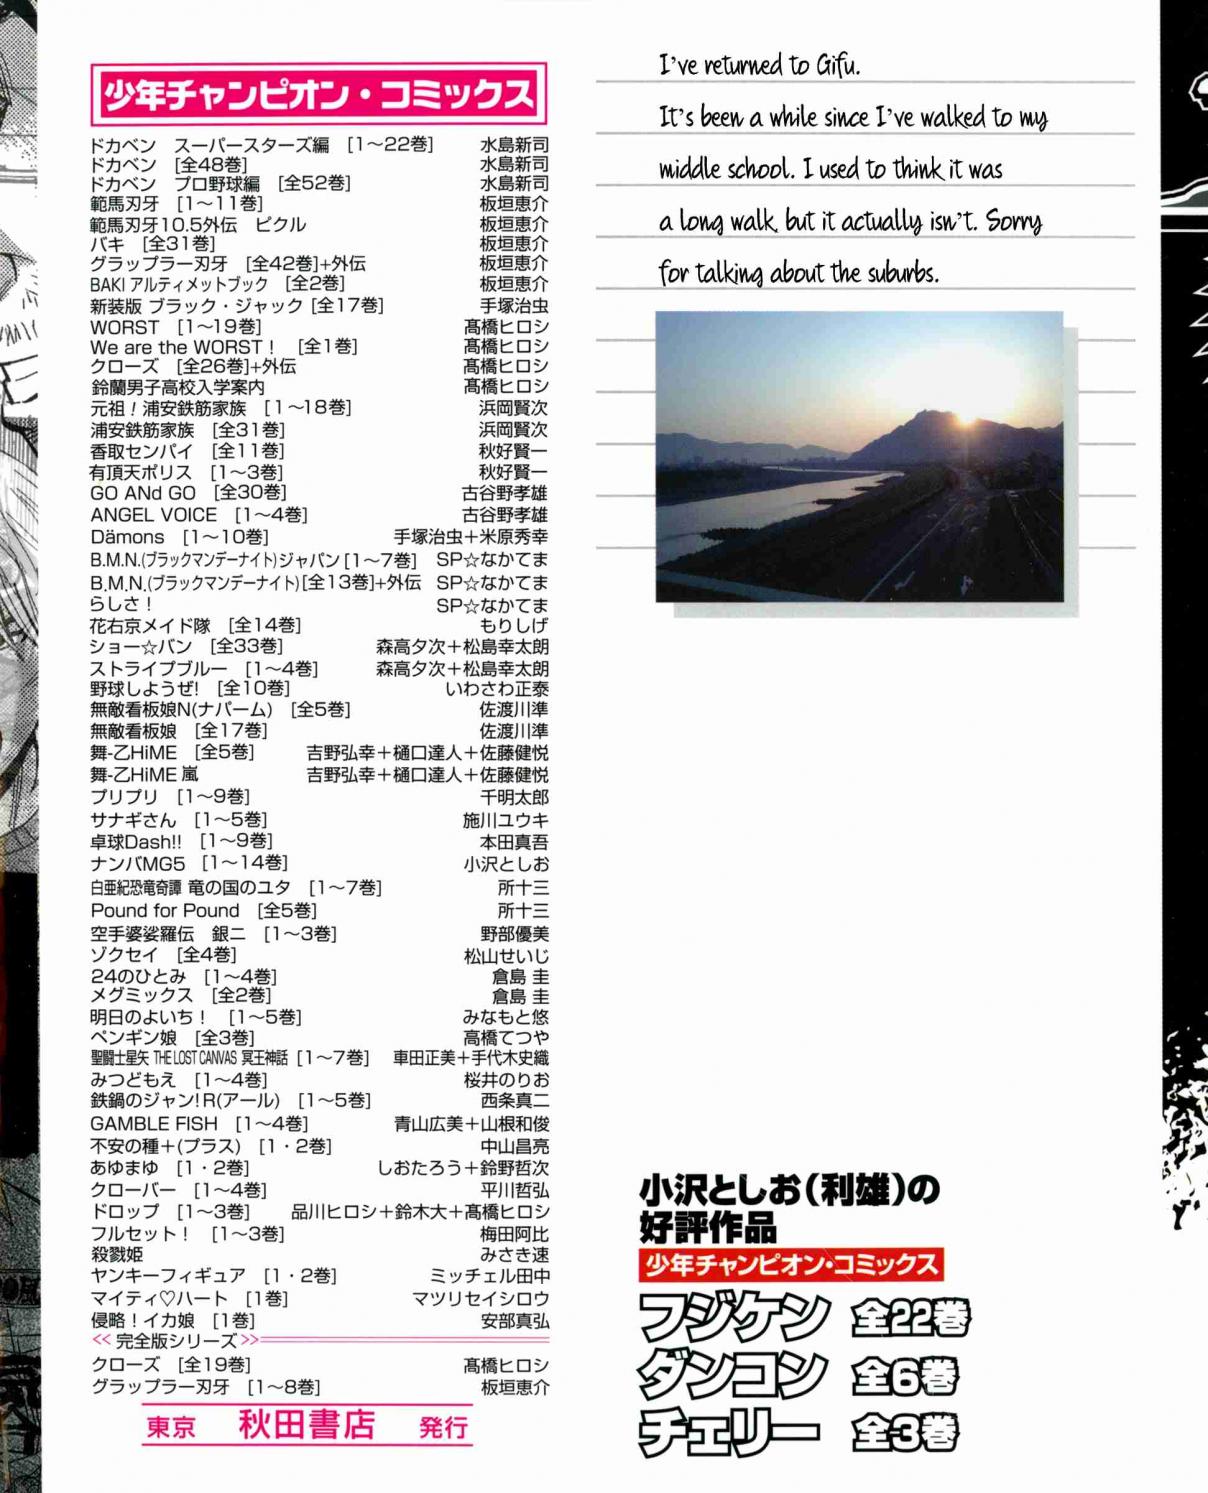 Nanba MG5 Vol. 10 Ch. 80 Sekiguchi is pissed!